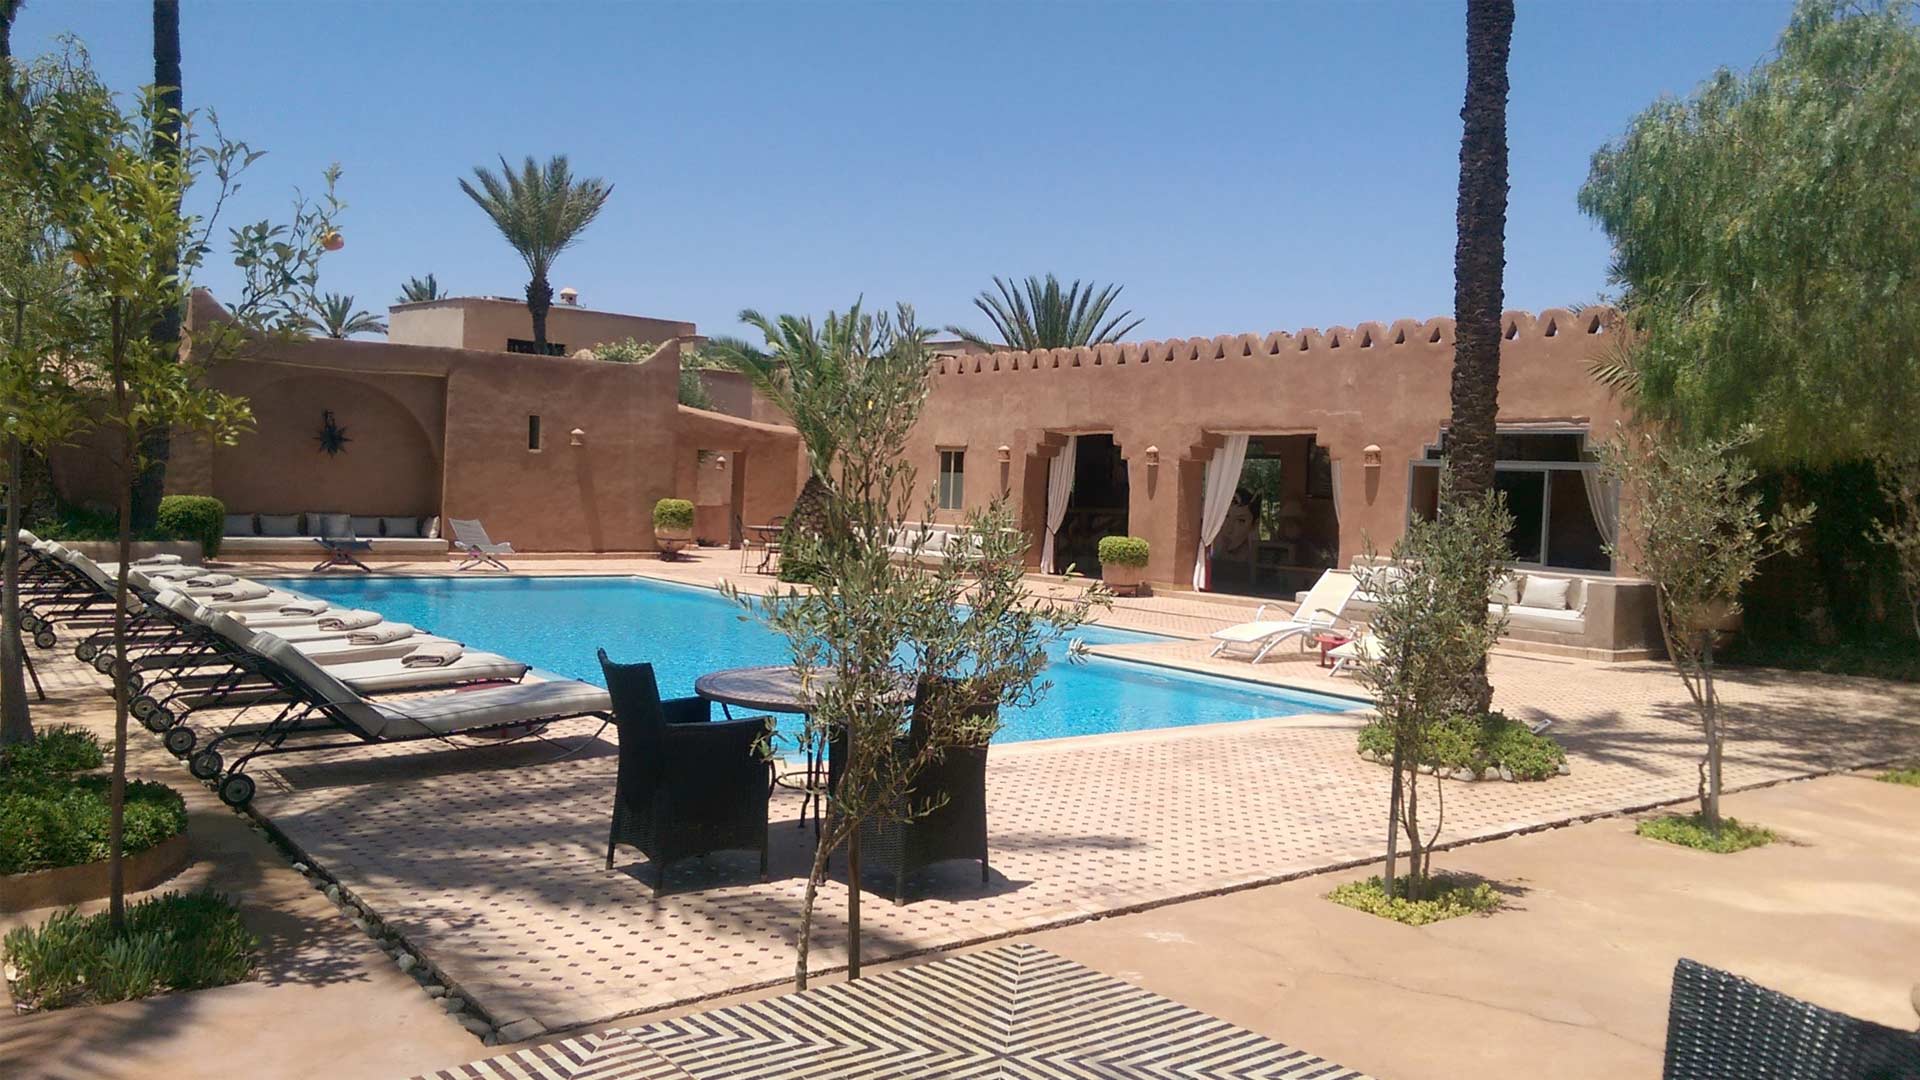 Villa Villa 33, Rental in Marrakech